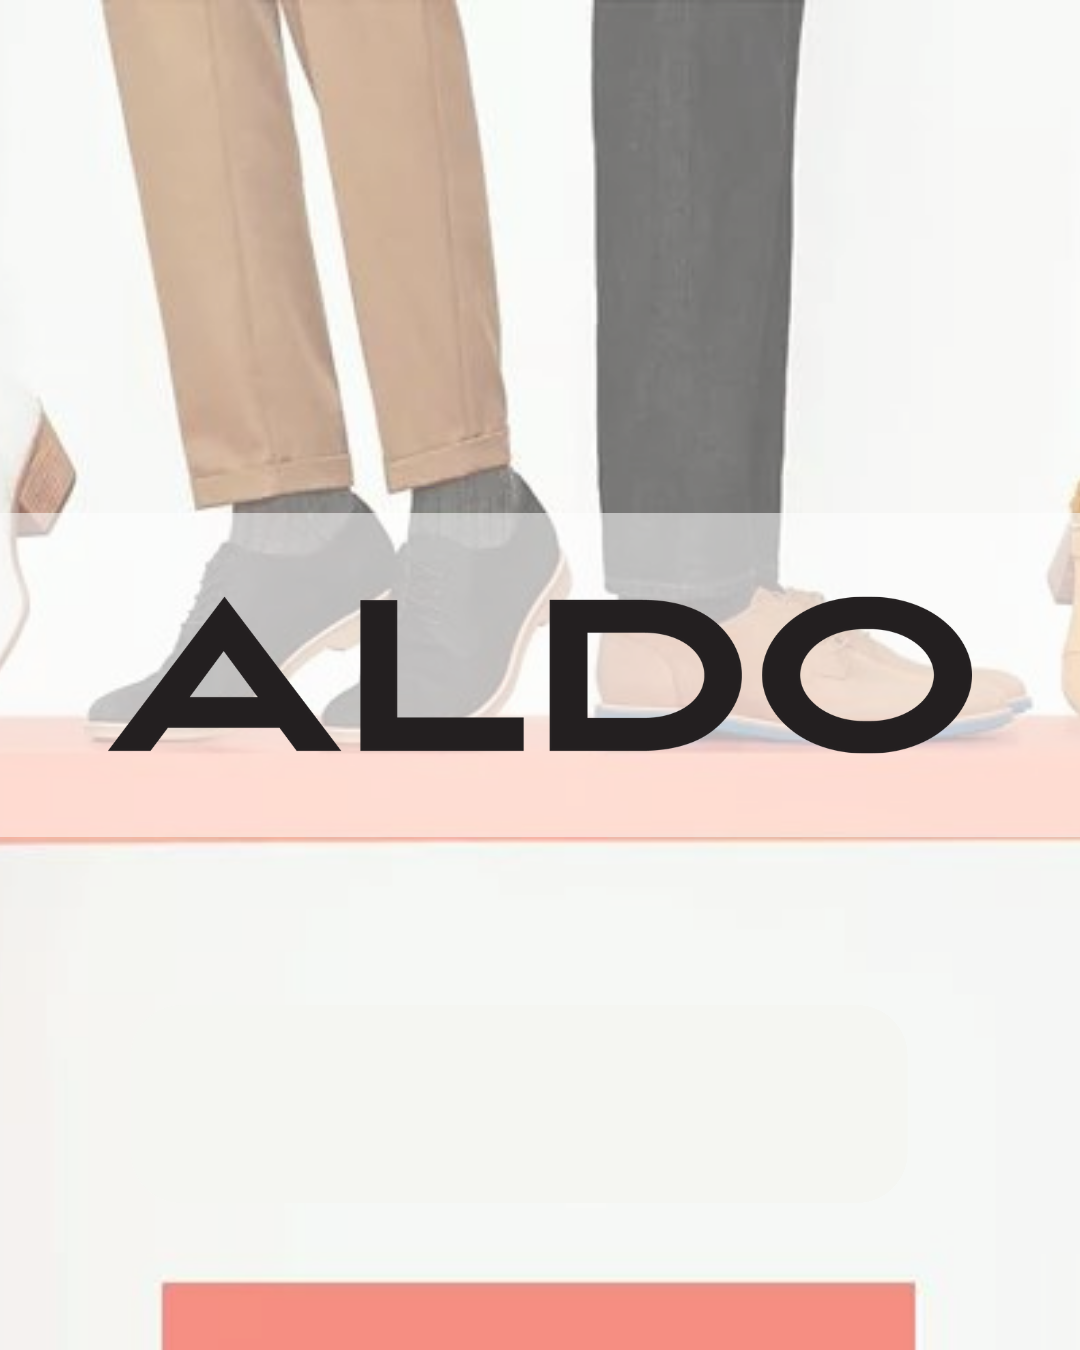 Aldo - Grupo Bennu